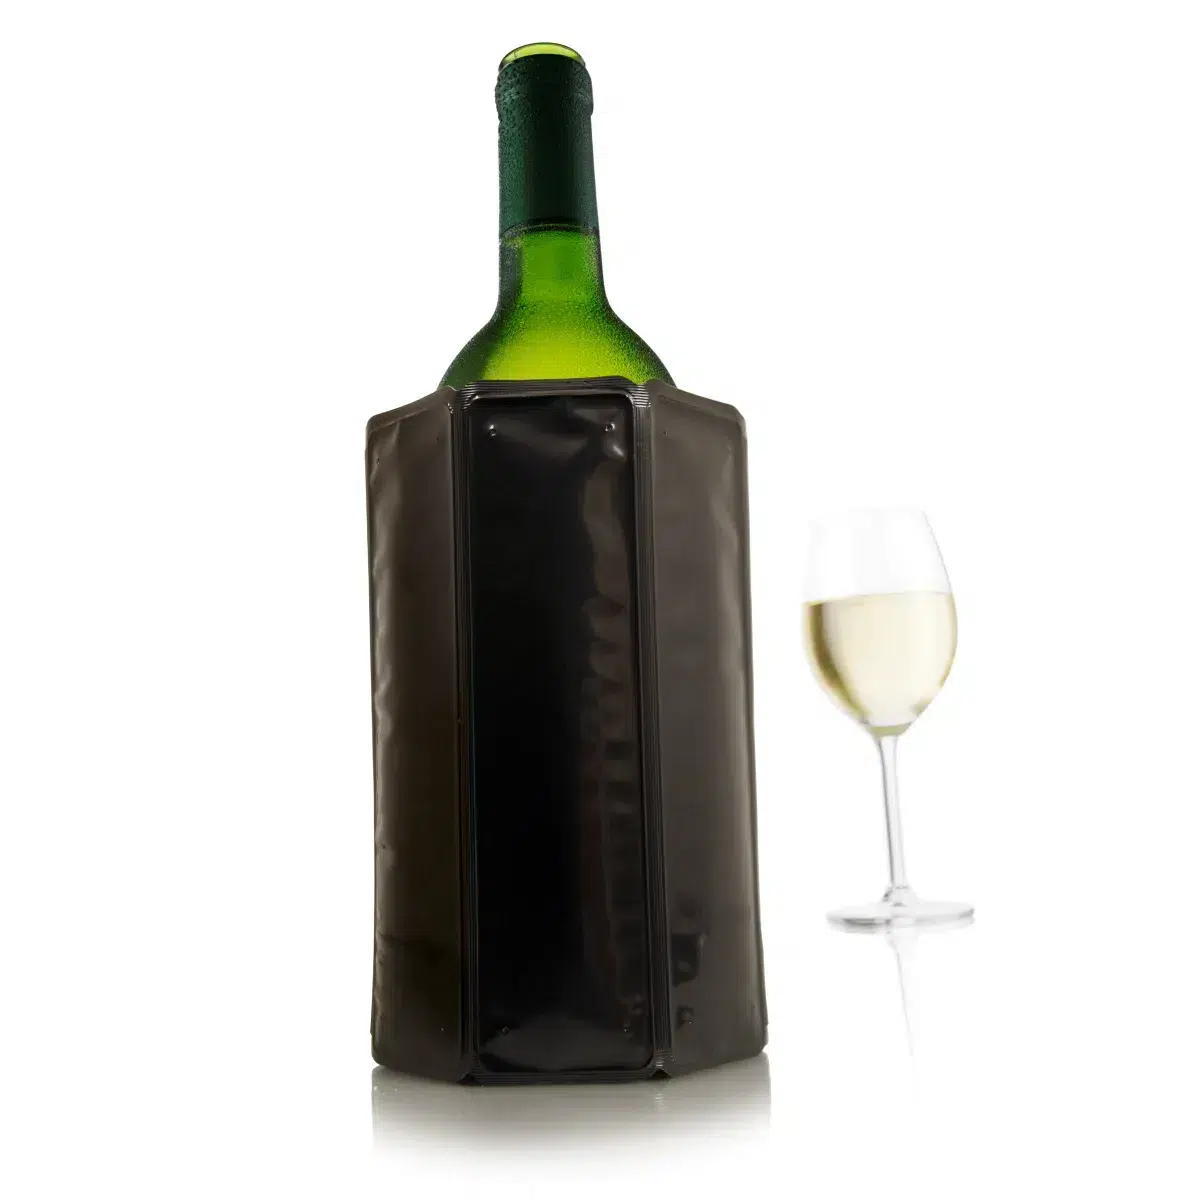 Une bouteille verte et un verre de vin blanc.